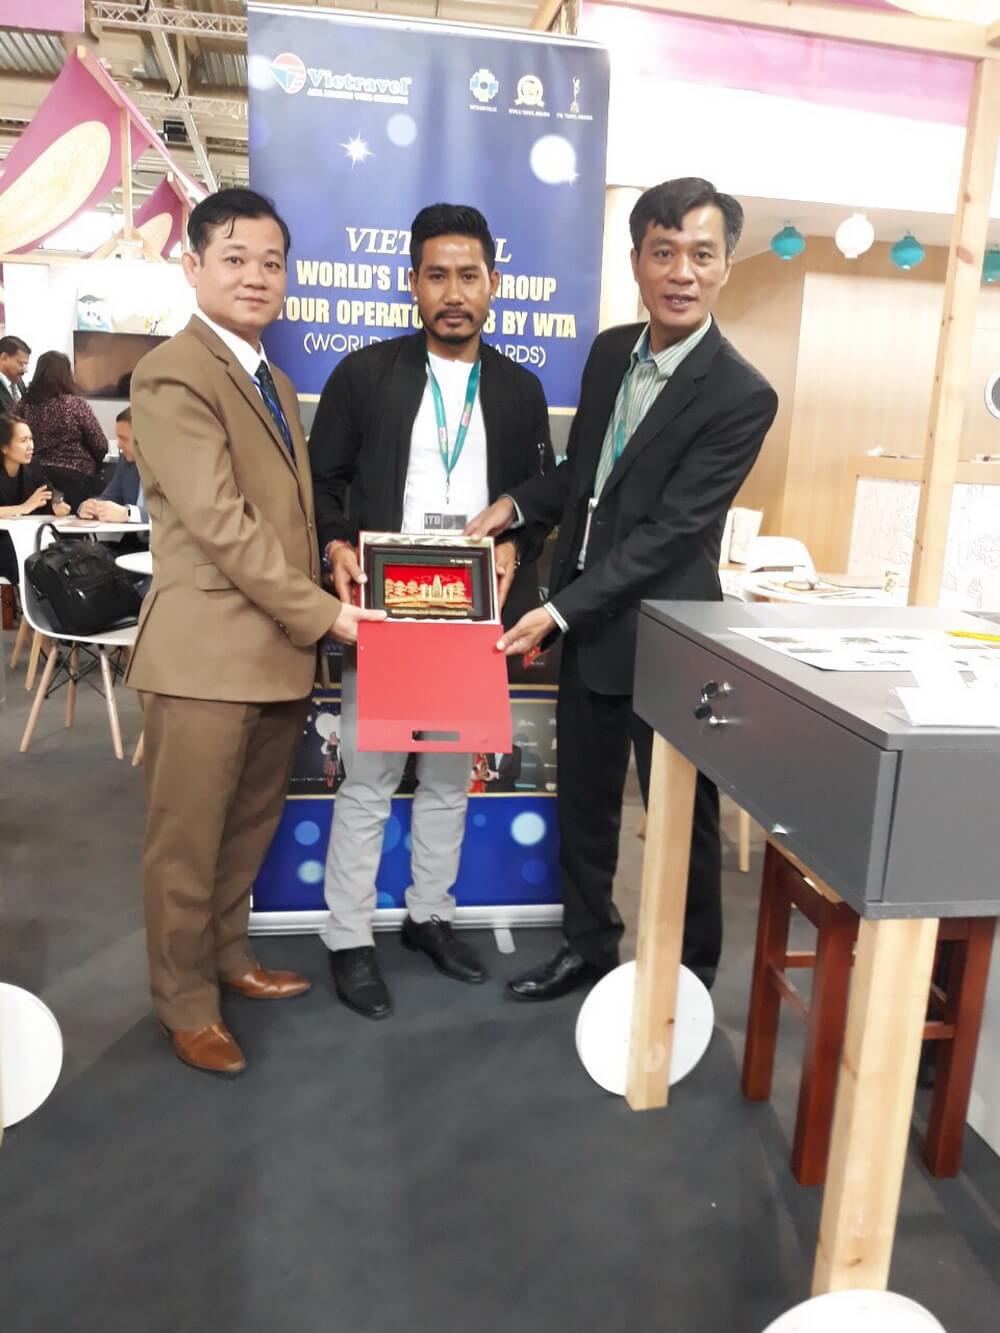 Vietravel quảng bá du lịch Việt Nam tại Hội chợ Du lịch Quốc tế ITB 2019